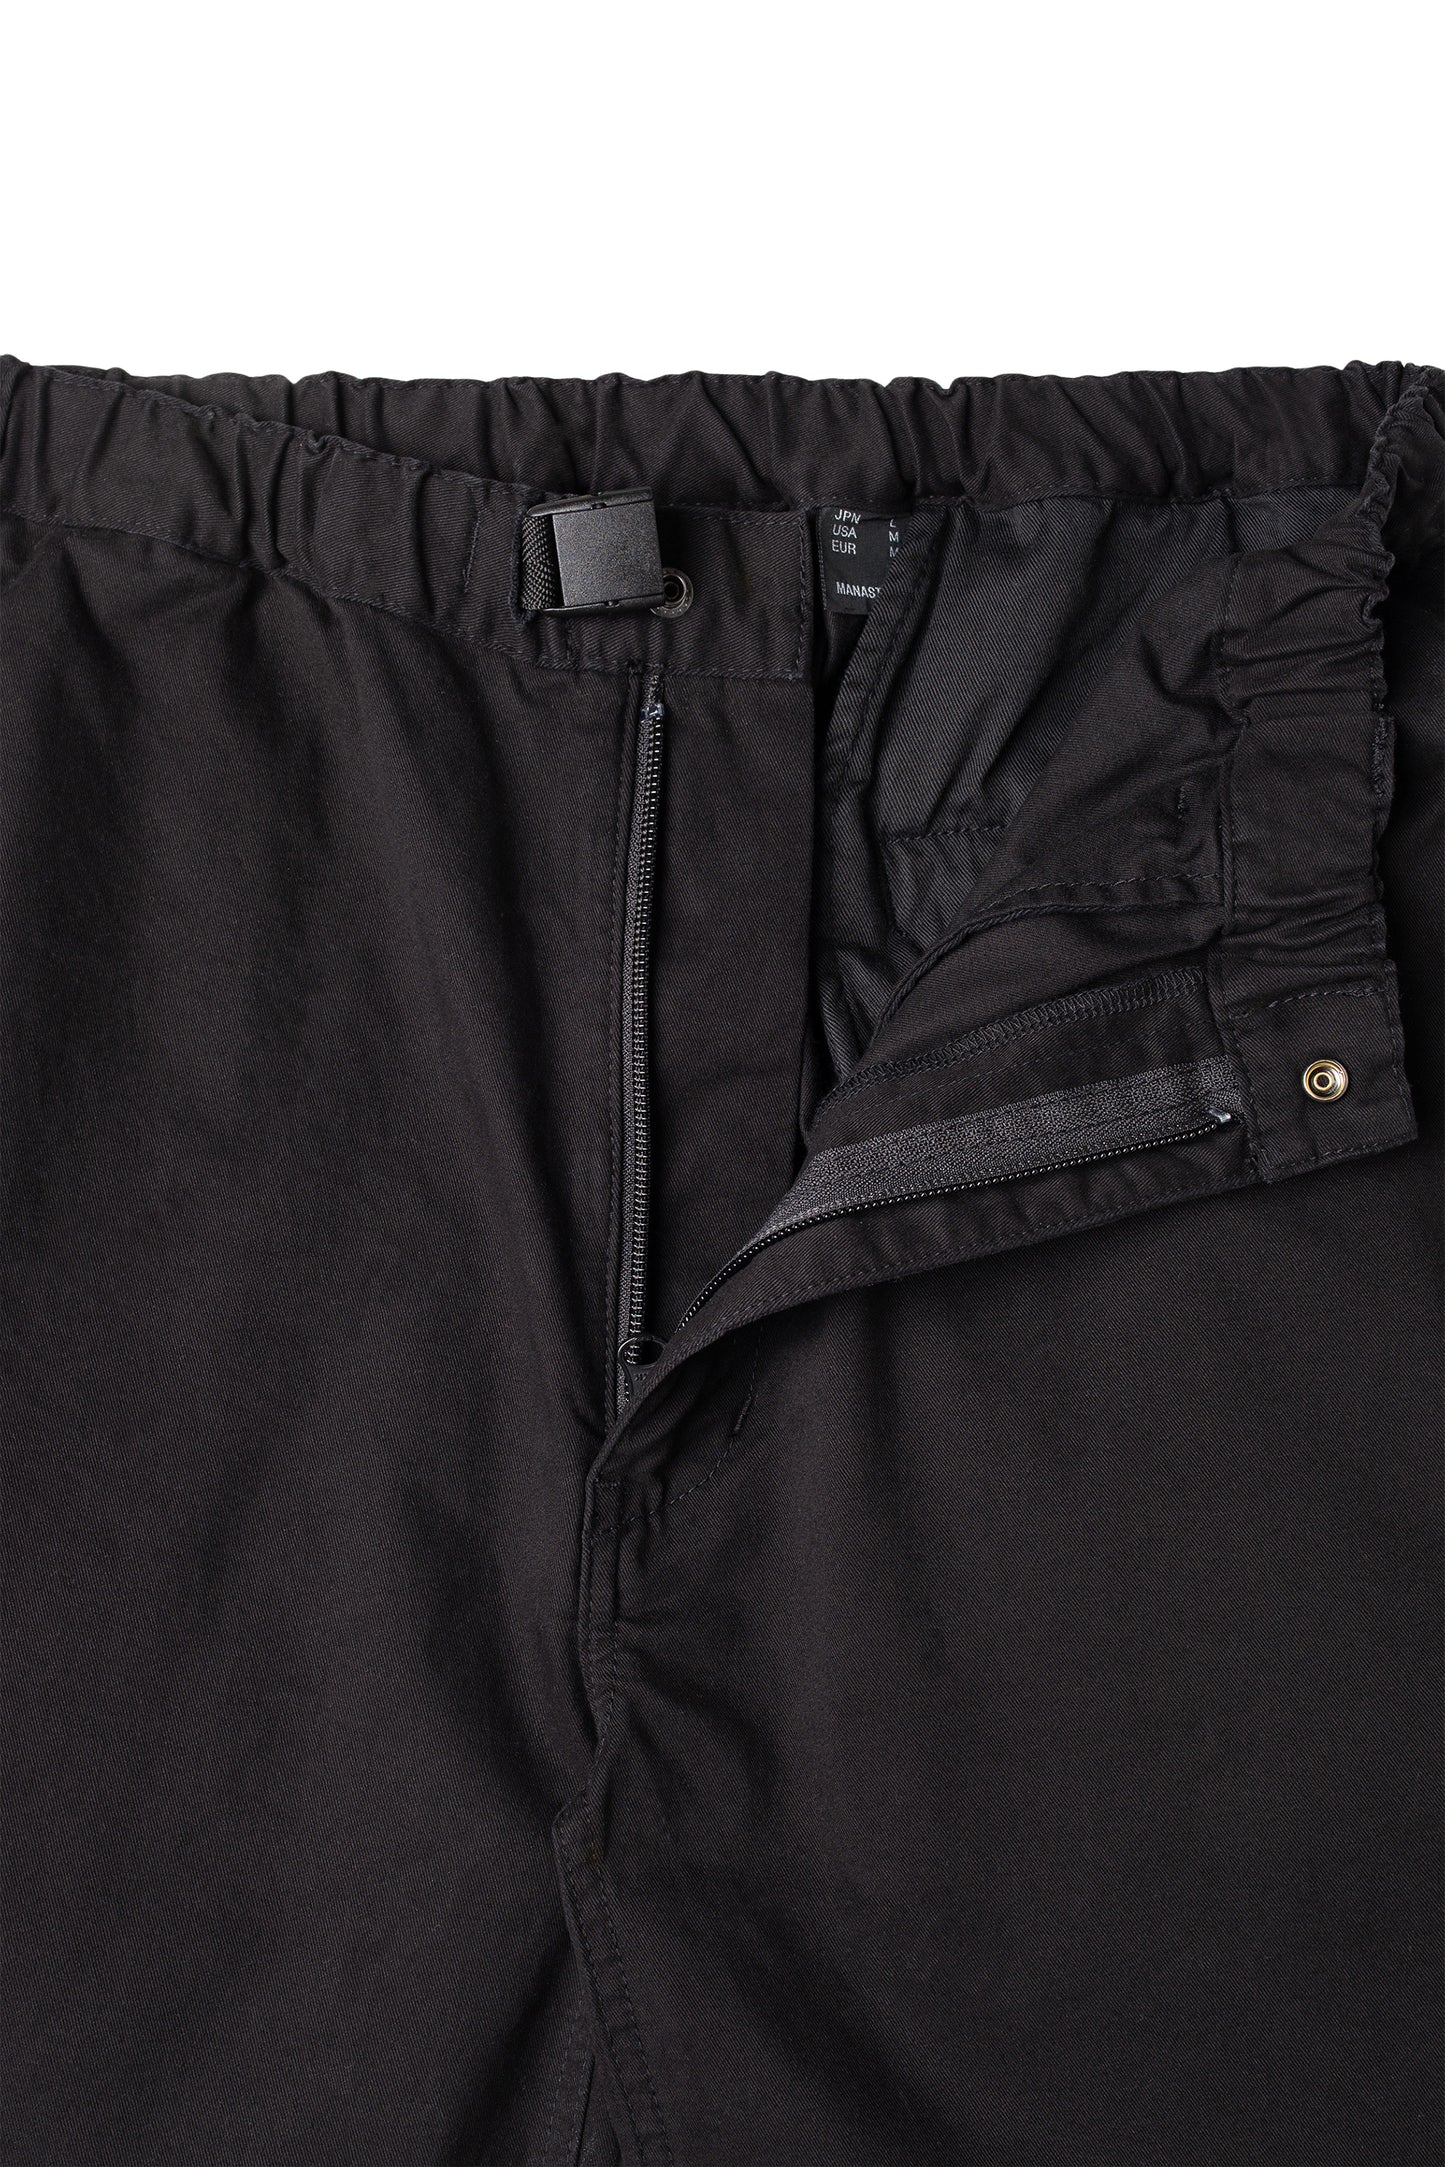 Flex Climber Wide Shorts (Black) – Manastash Europe